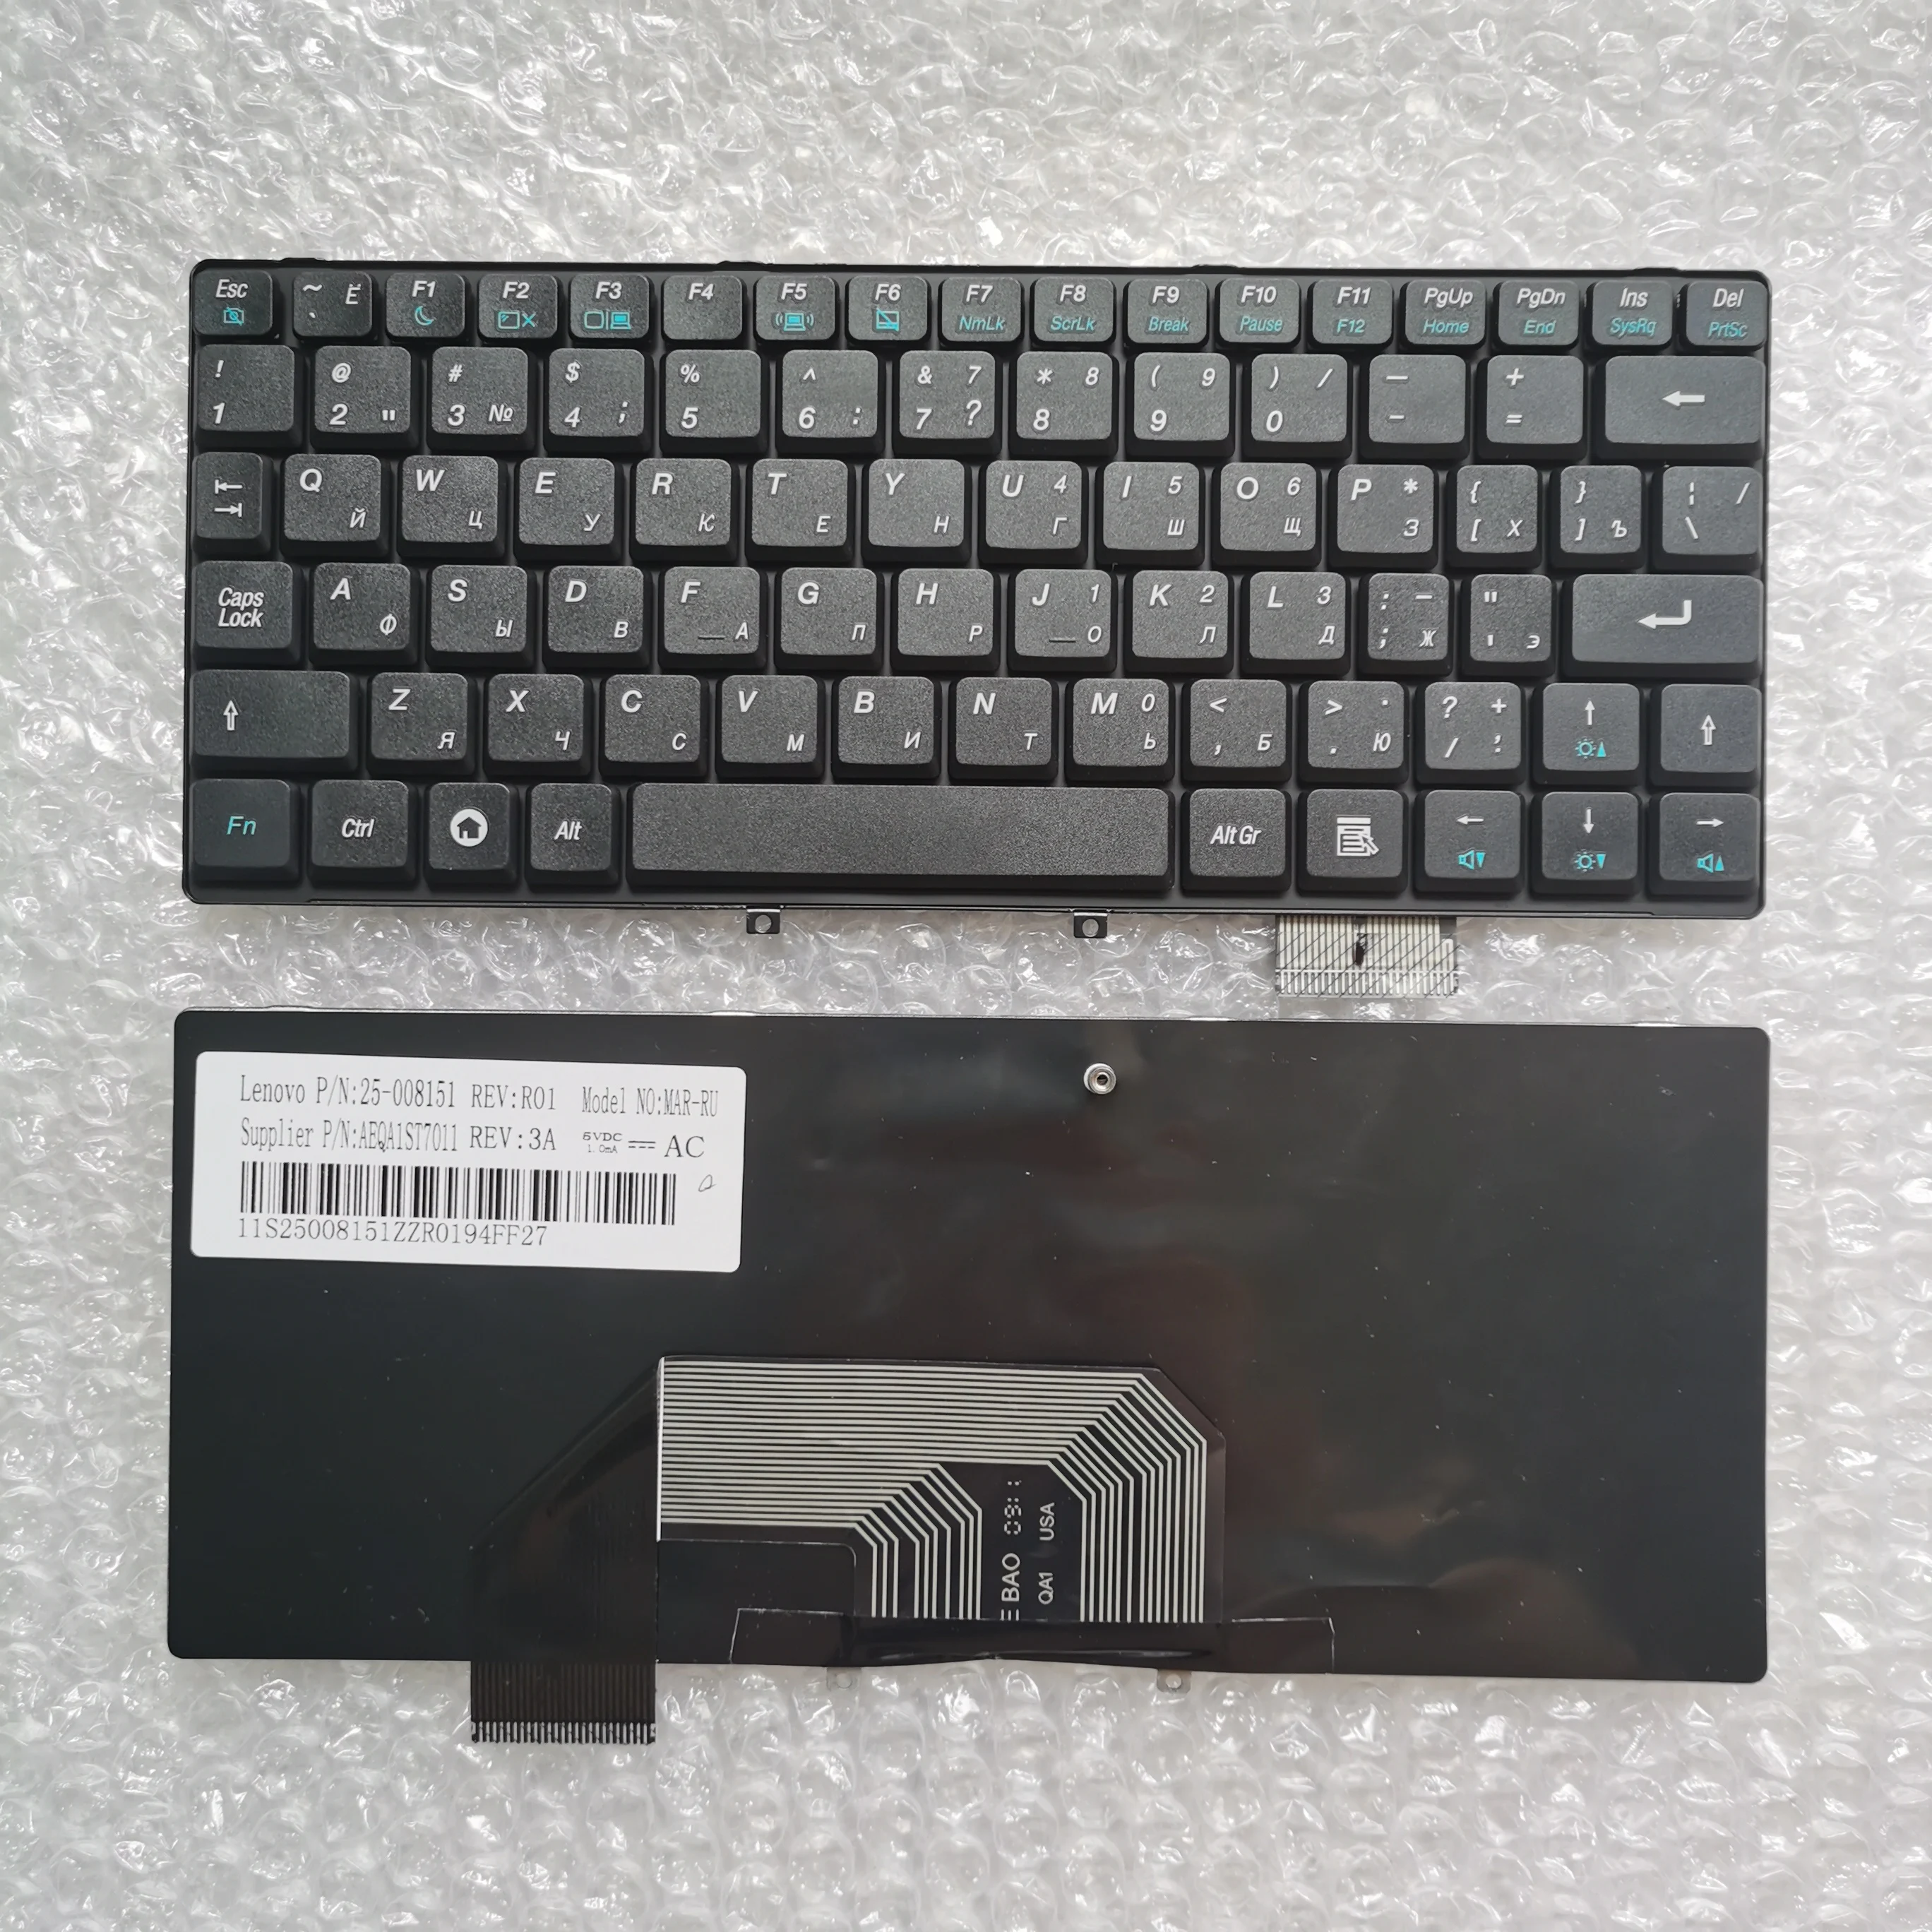 

Оригинальная русская клавиатура XIN для ноутбука Lenovo IdeaPad S9 S9E S10 S10E, клавиатура для ноутбука белого и черного цветов, версия 25-008151 MAR-RU